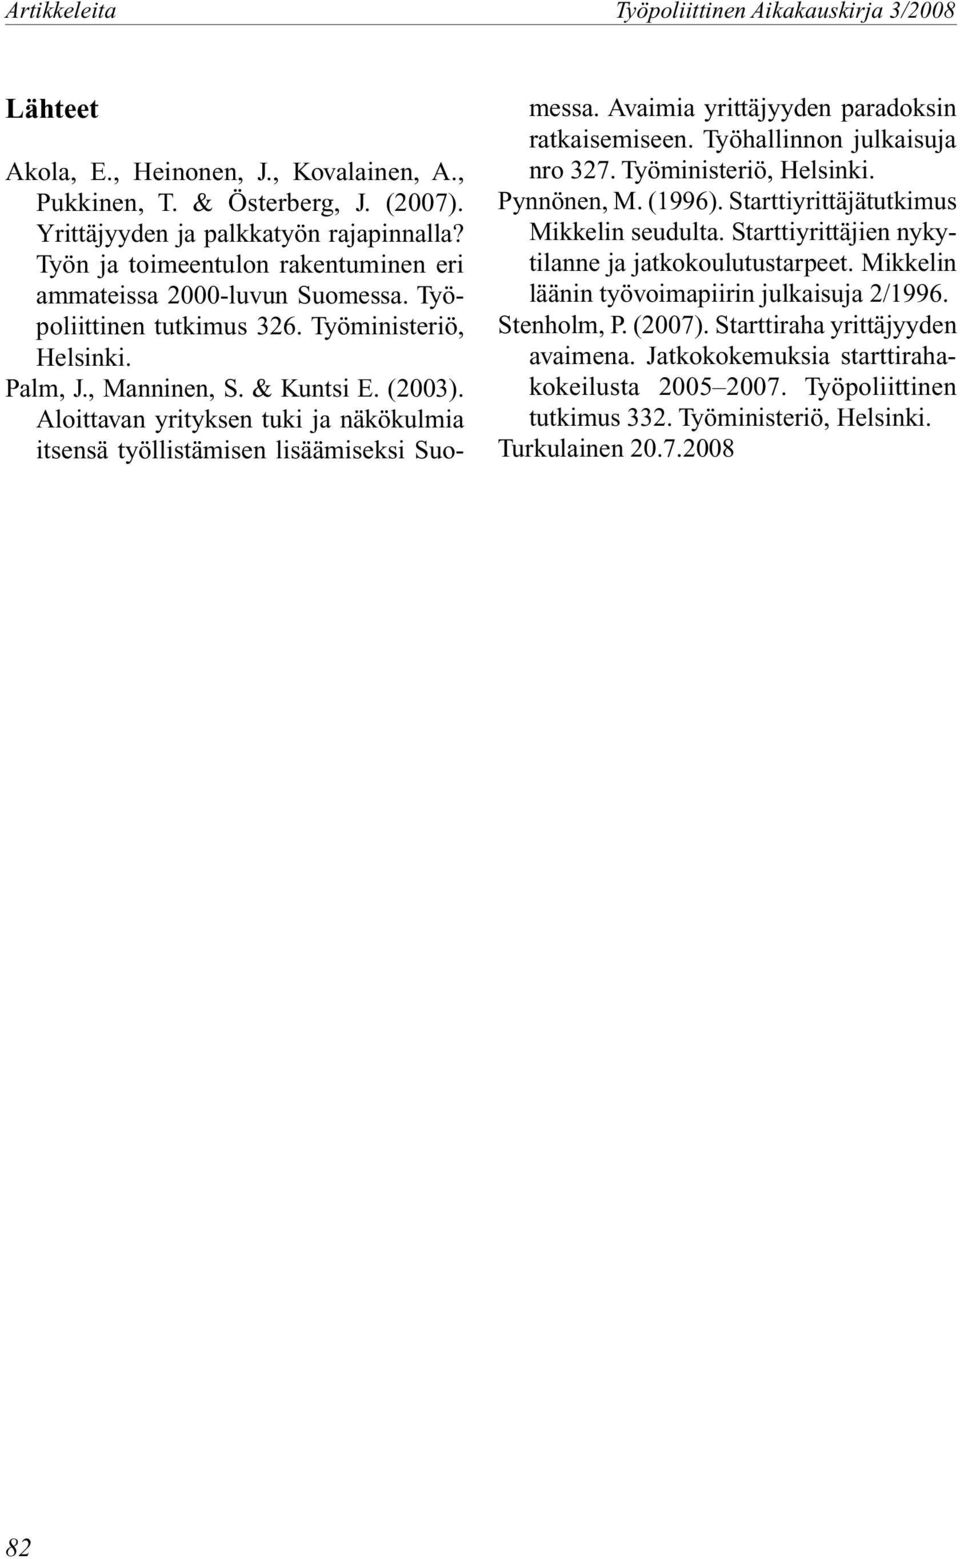 Avaimia yrittäjyyden paradoksin ratkaisemiseen. Työhallinnon julkaisuja nro 327. Työministeriö, Helsinki. Pynnönen, M. (1996). Starttiyrittäjätutkimus Mikkelin seudulta.